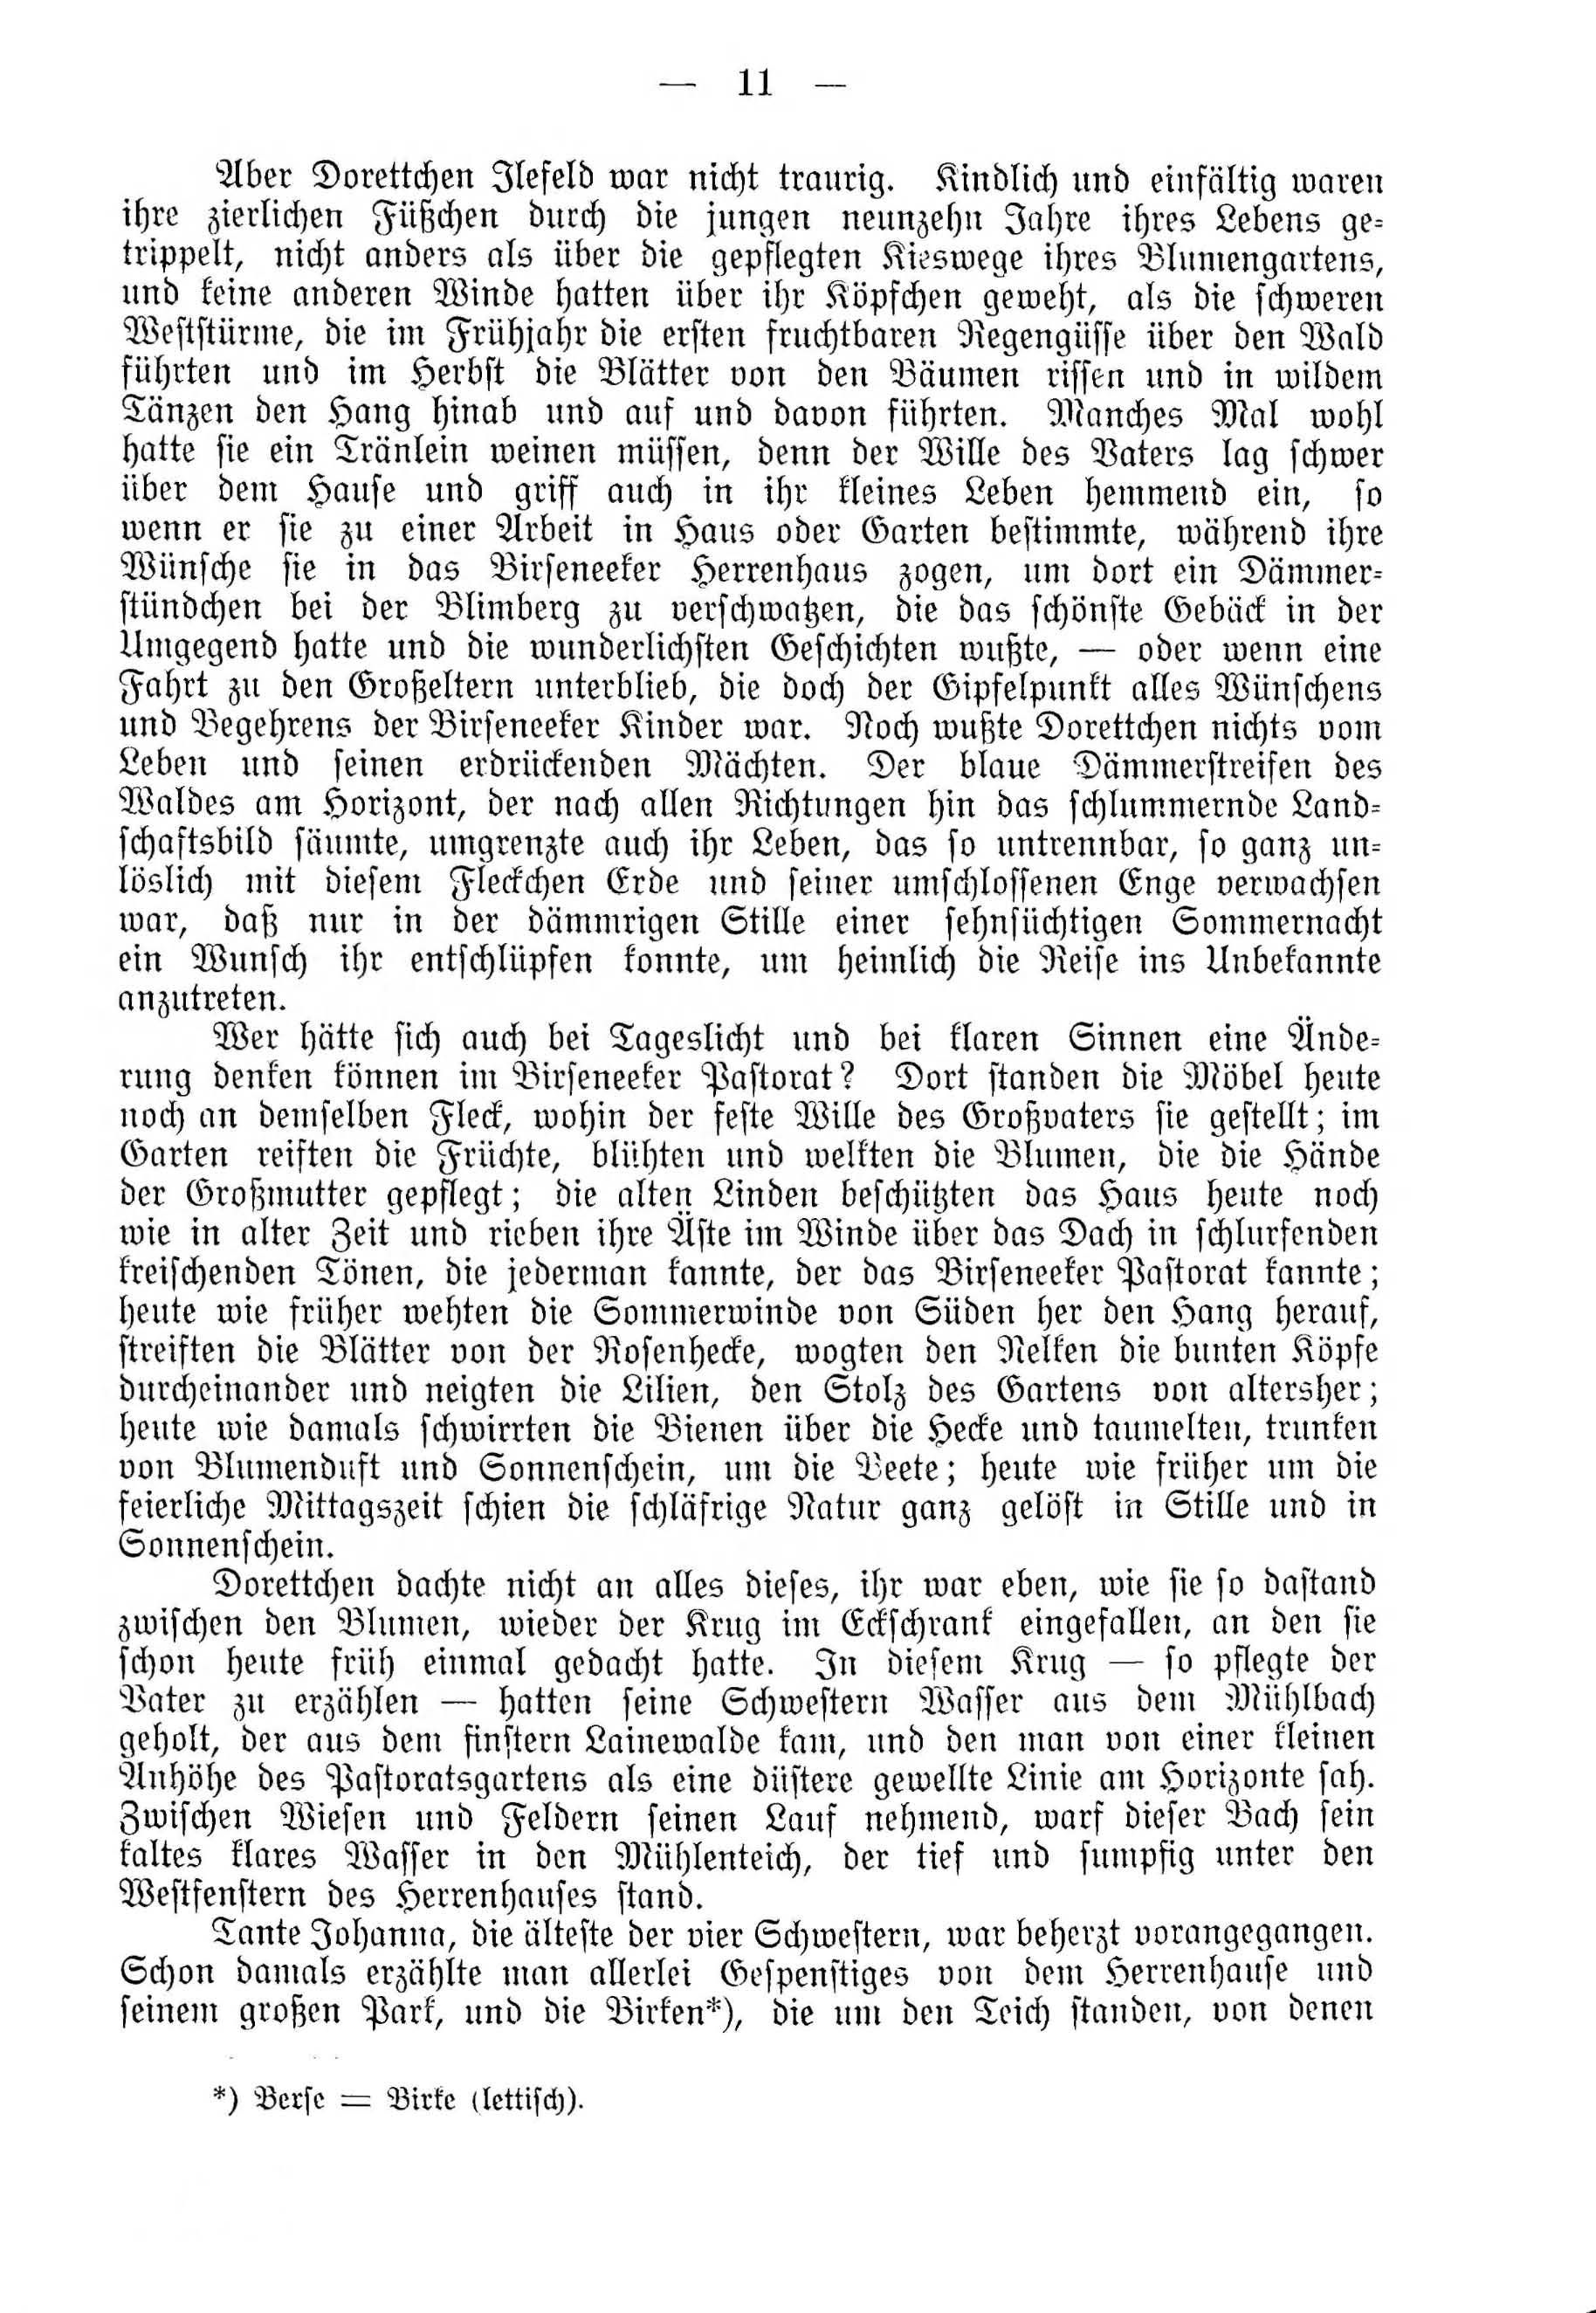 Deutsche Monatsschrift für Russland [4] (1915) | 11. (11) Haupttext